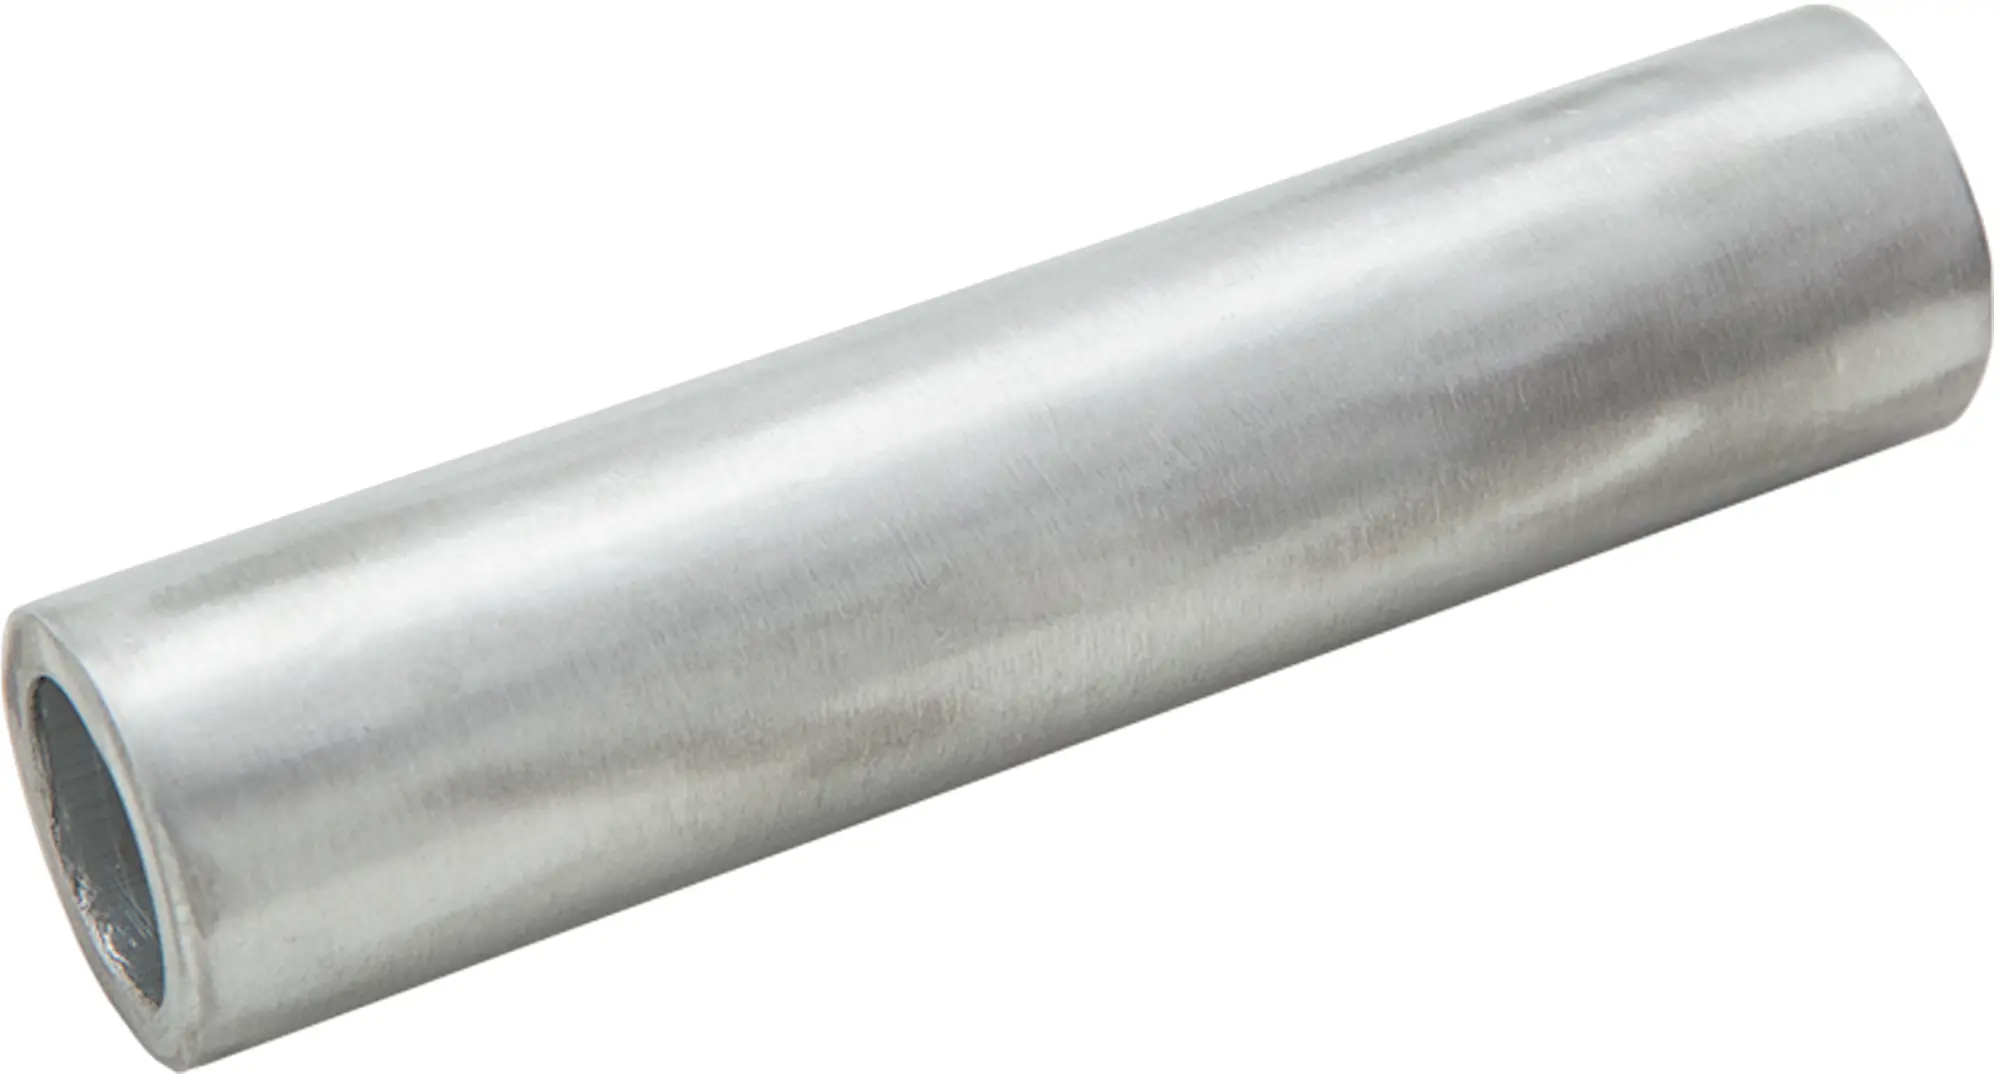 Гильза кабельная луженая Duwi ГМЛ 6-4 мм медь 10 шт. медная луженая кабельная гильза под опрессовку duwi